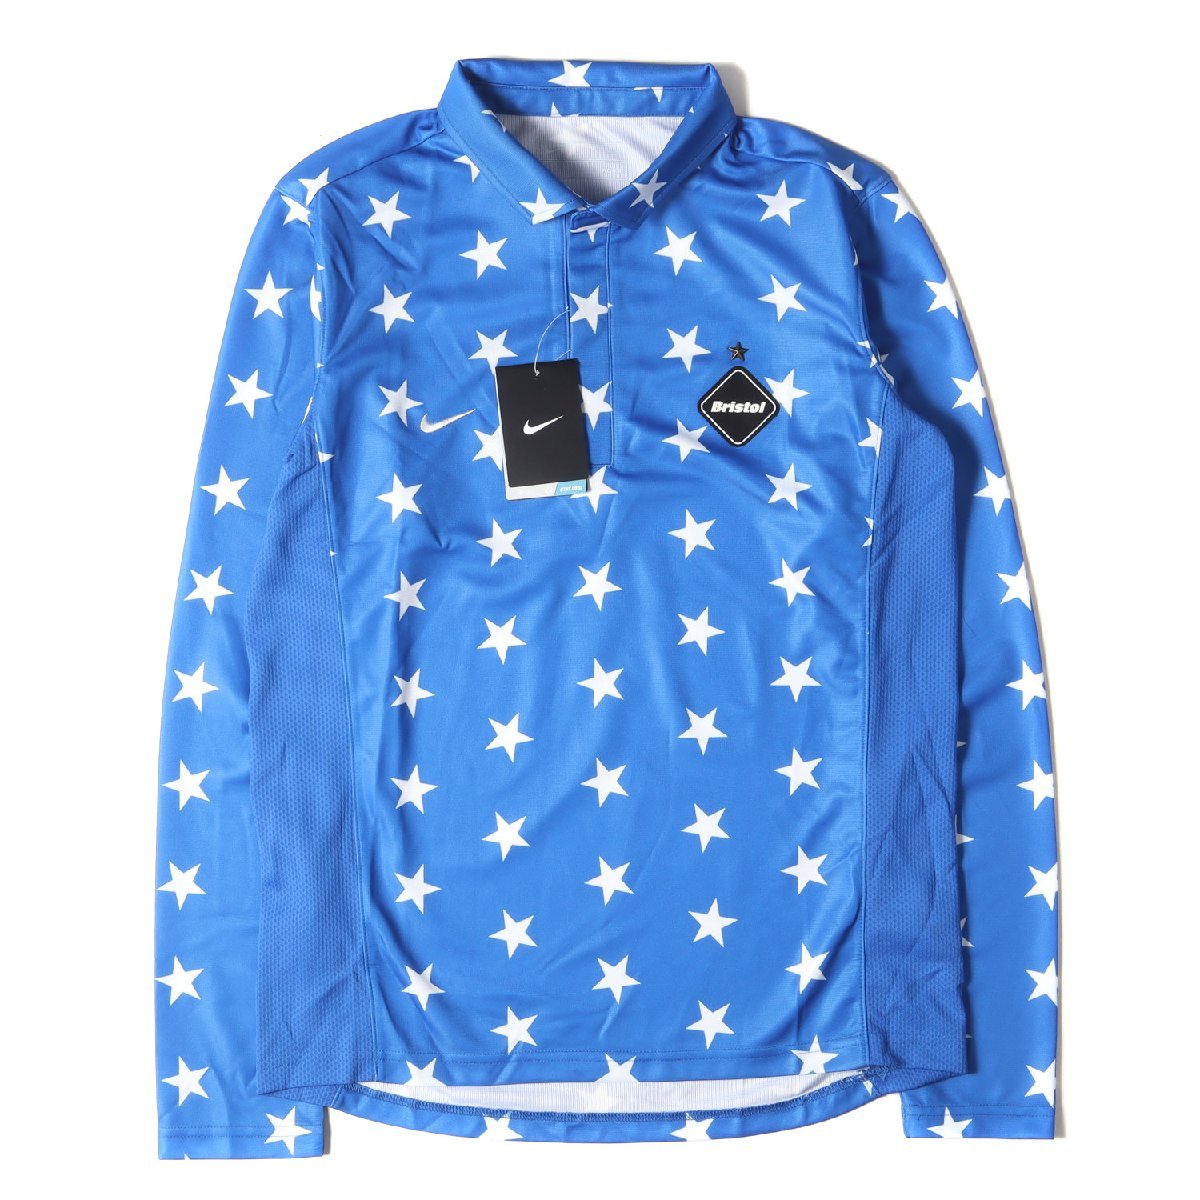 新品 F.C.Real Bristol エフシーレアルブリストル ポロシャツ サイズ:M NIKE ナイキ スター柄 ロングスリーブ ゲーム ポロシャツ ブルー